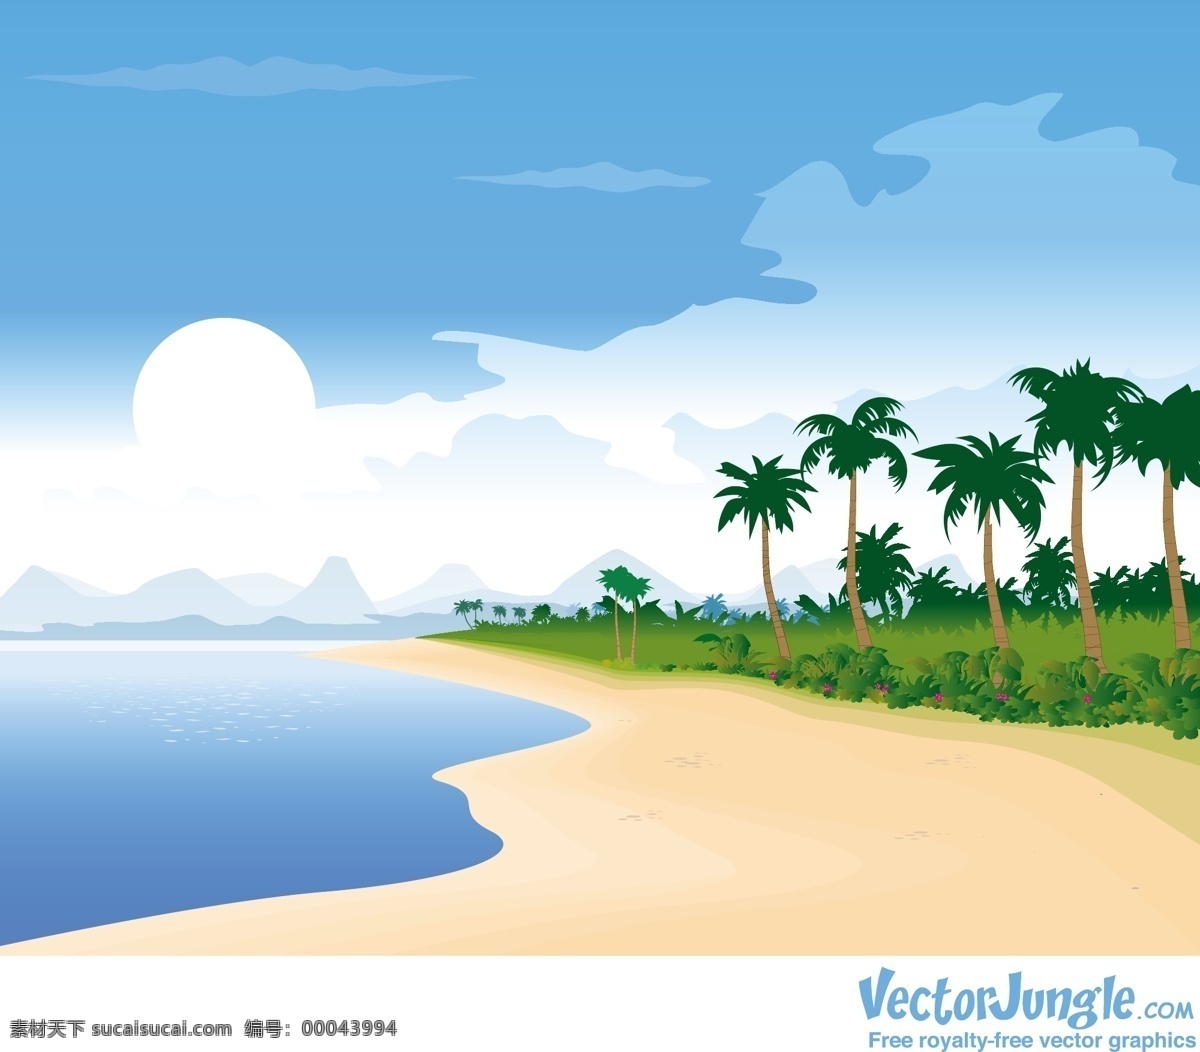 美丽 海滩 背景 矢量 包 插画 插图 创意 海洋 免费 矢量图形 病 媒 生物 载体 人工智能 ps 图象处理 软件 现代的 独特的 原始的 高质量 质量 新鲜的 热带的 热带地区 psd源文件